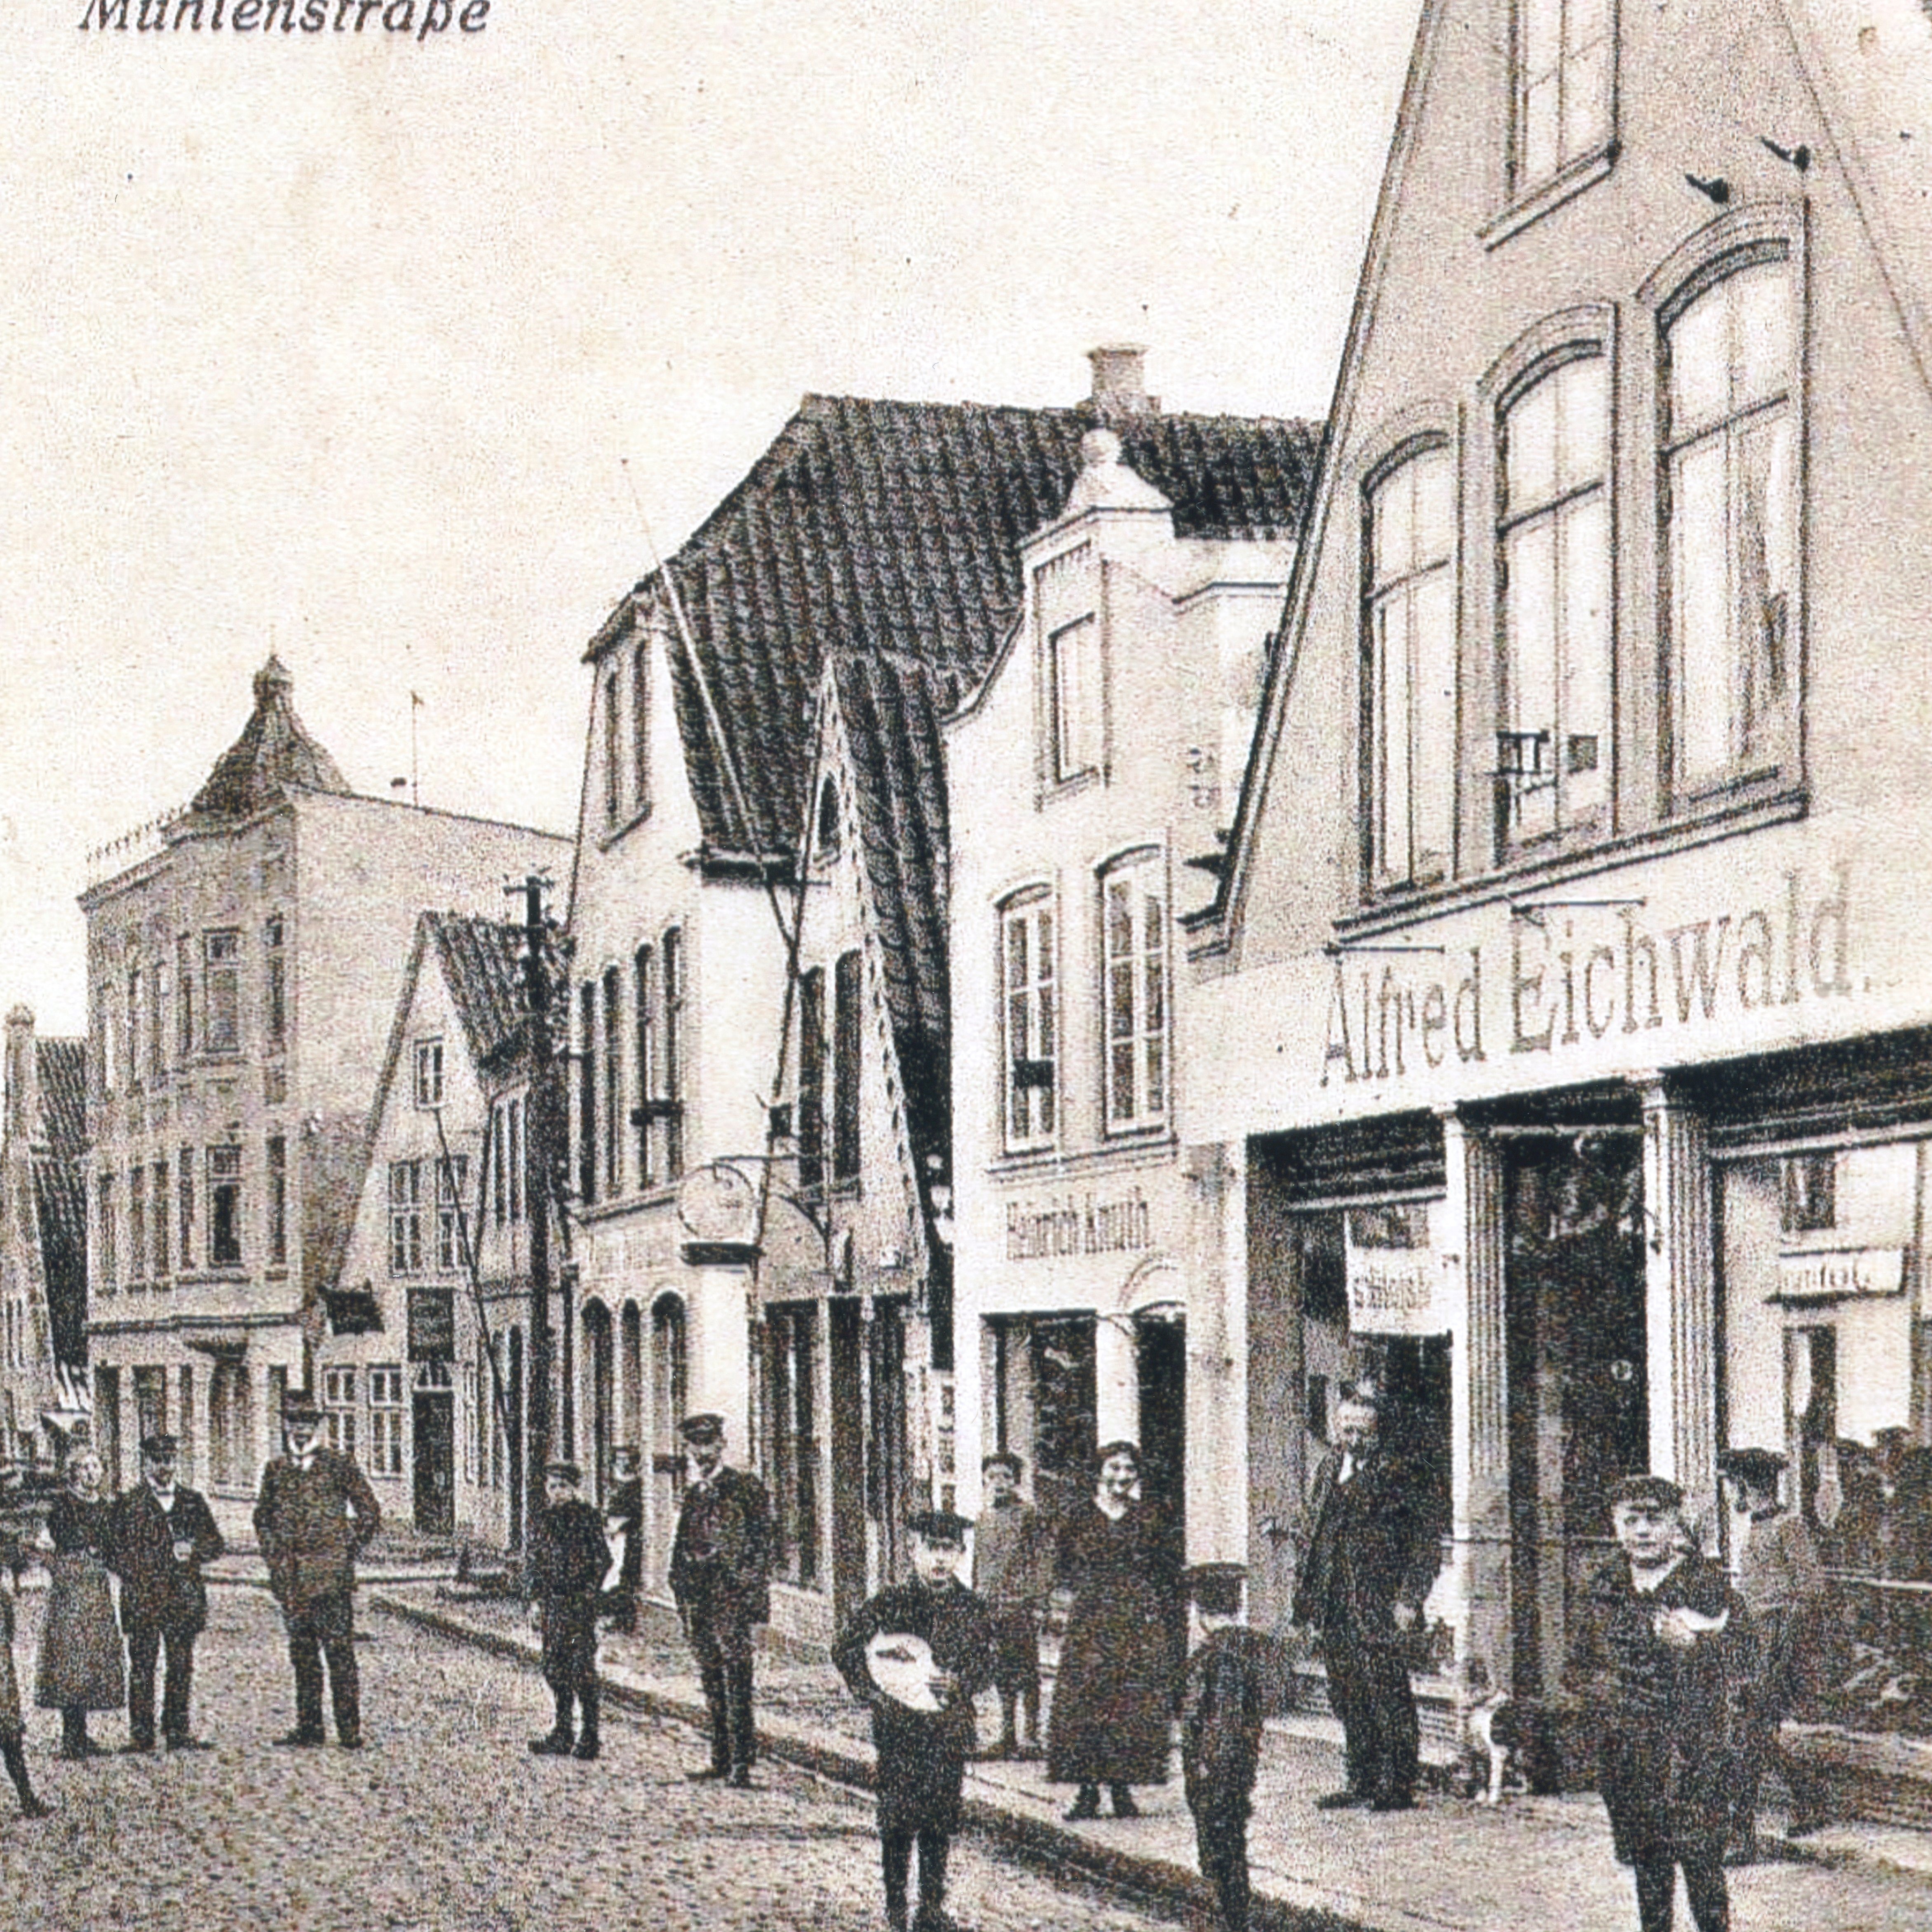 Das Bild zeigt das Geschäft der Familie Eichwald in der Mühlenstraße in Kappeln und stammt aus dem Stadtarchiv der Stadt Kappeln.